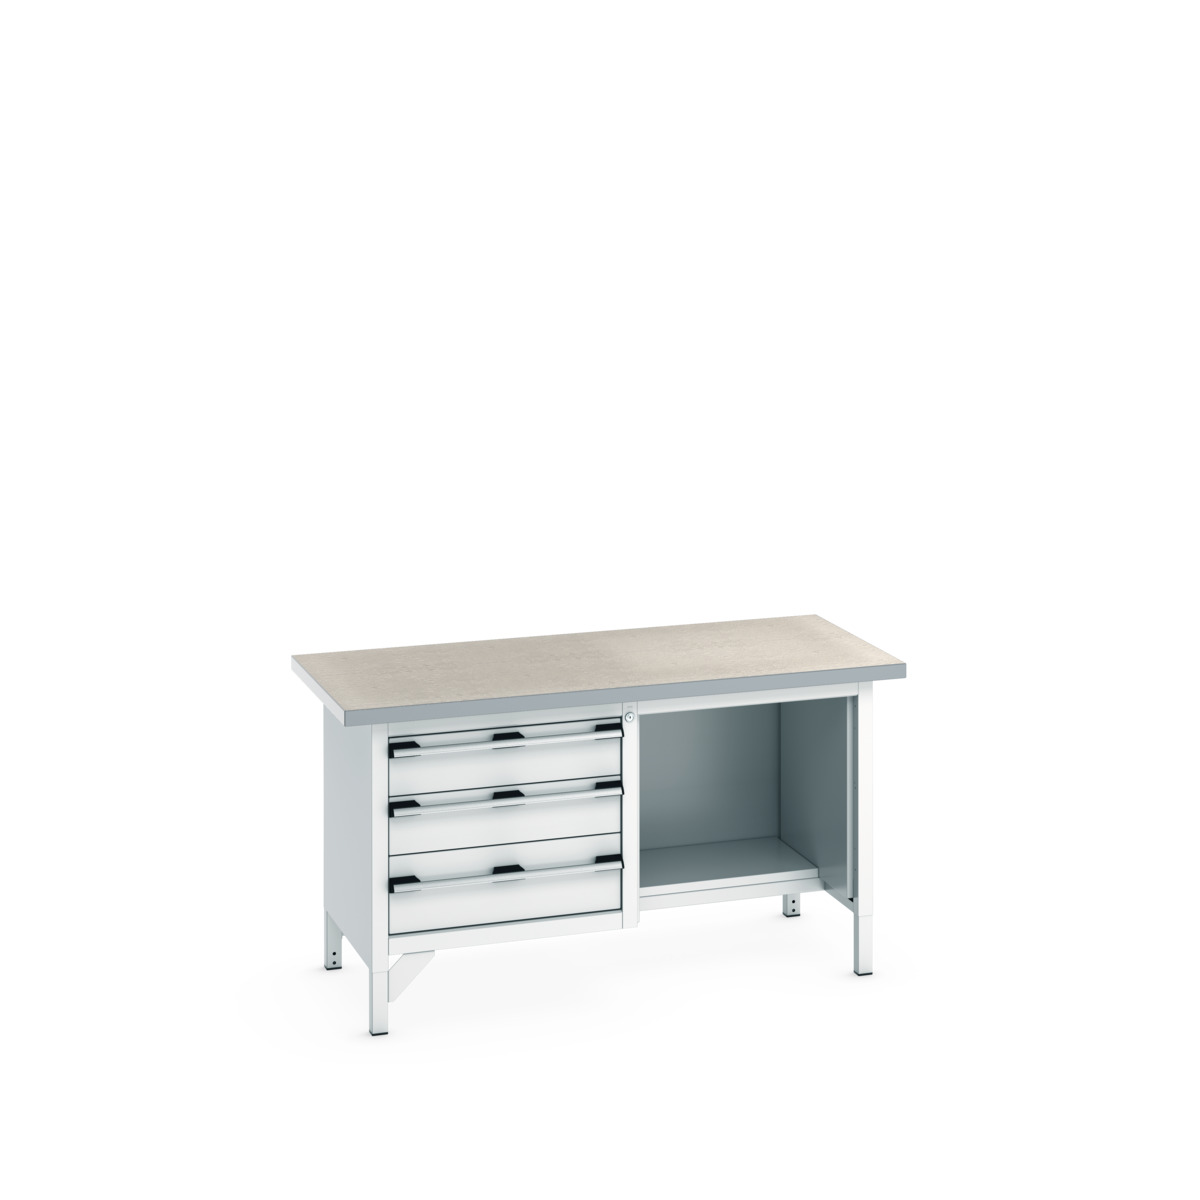 41002042.16V - cubio storage bench (lino)